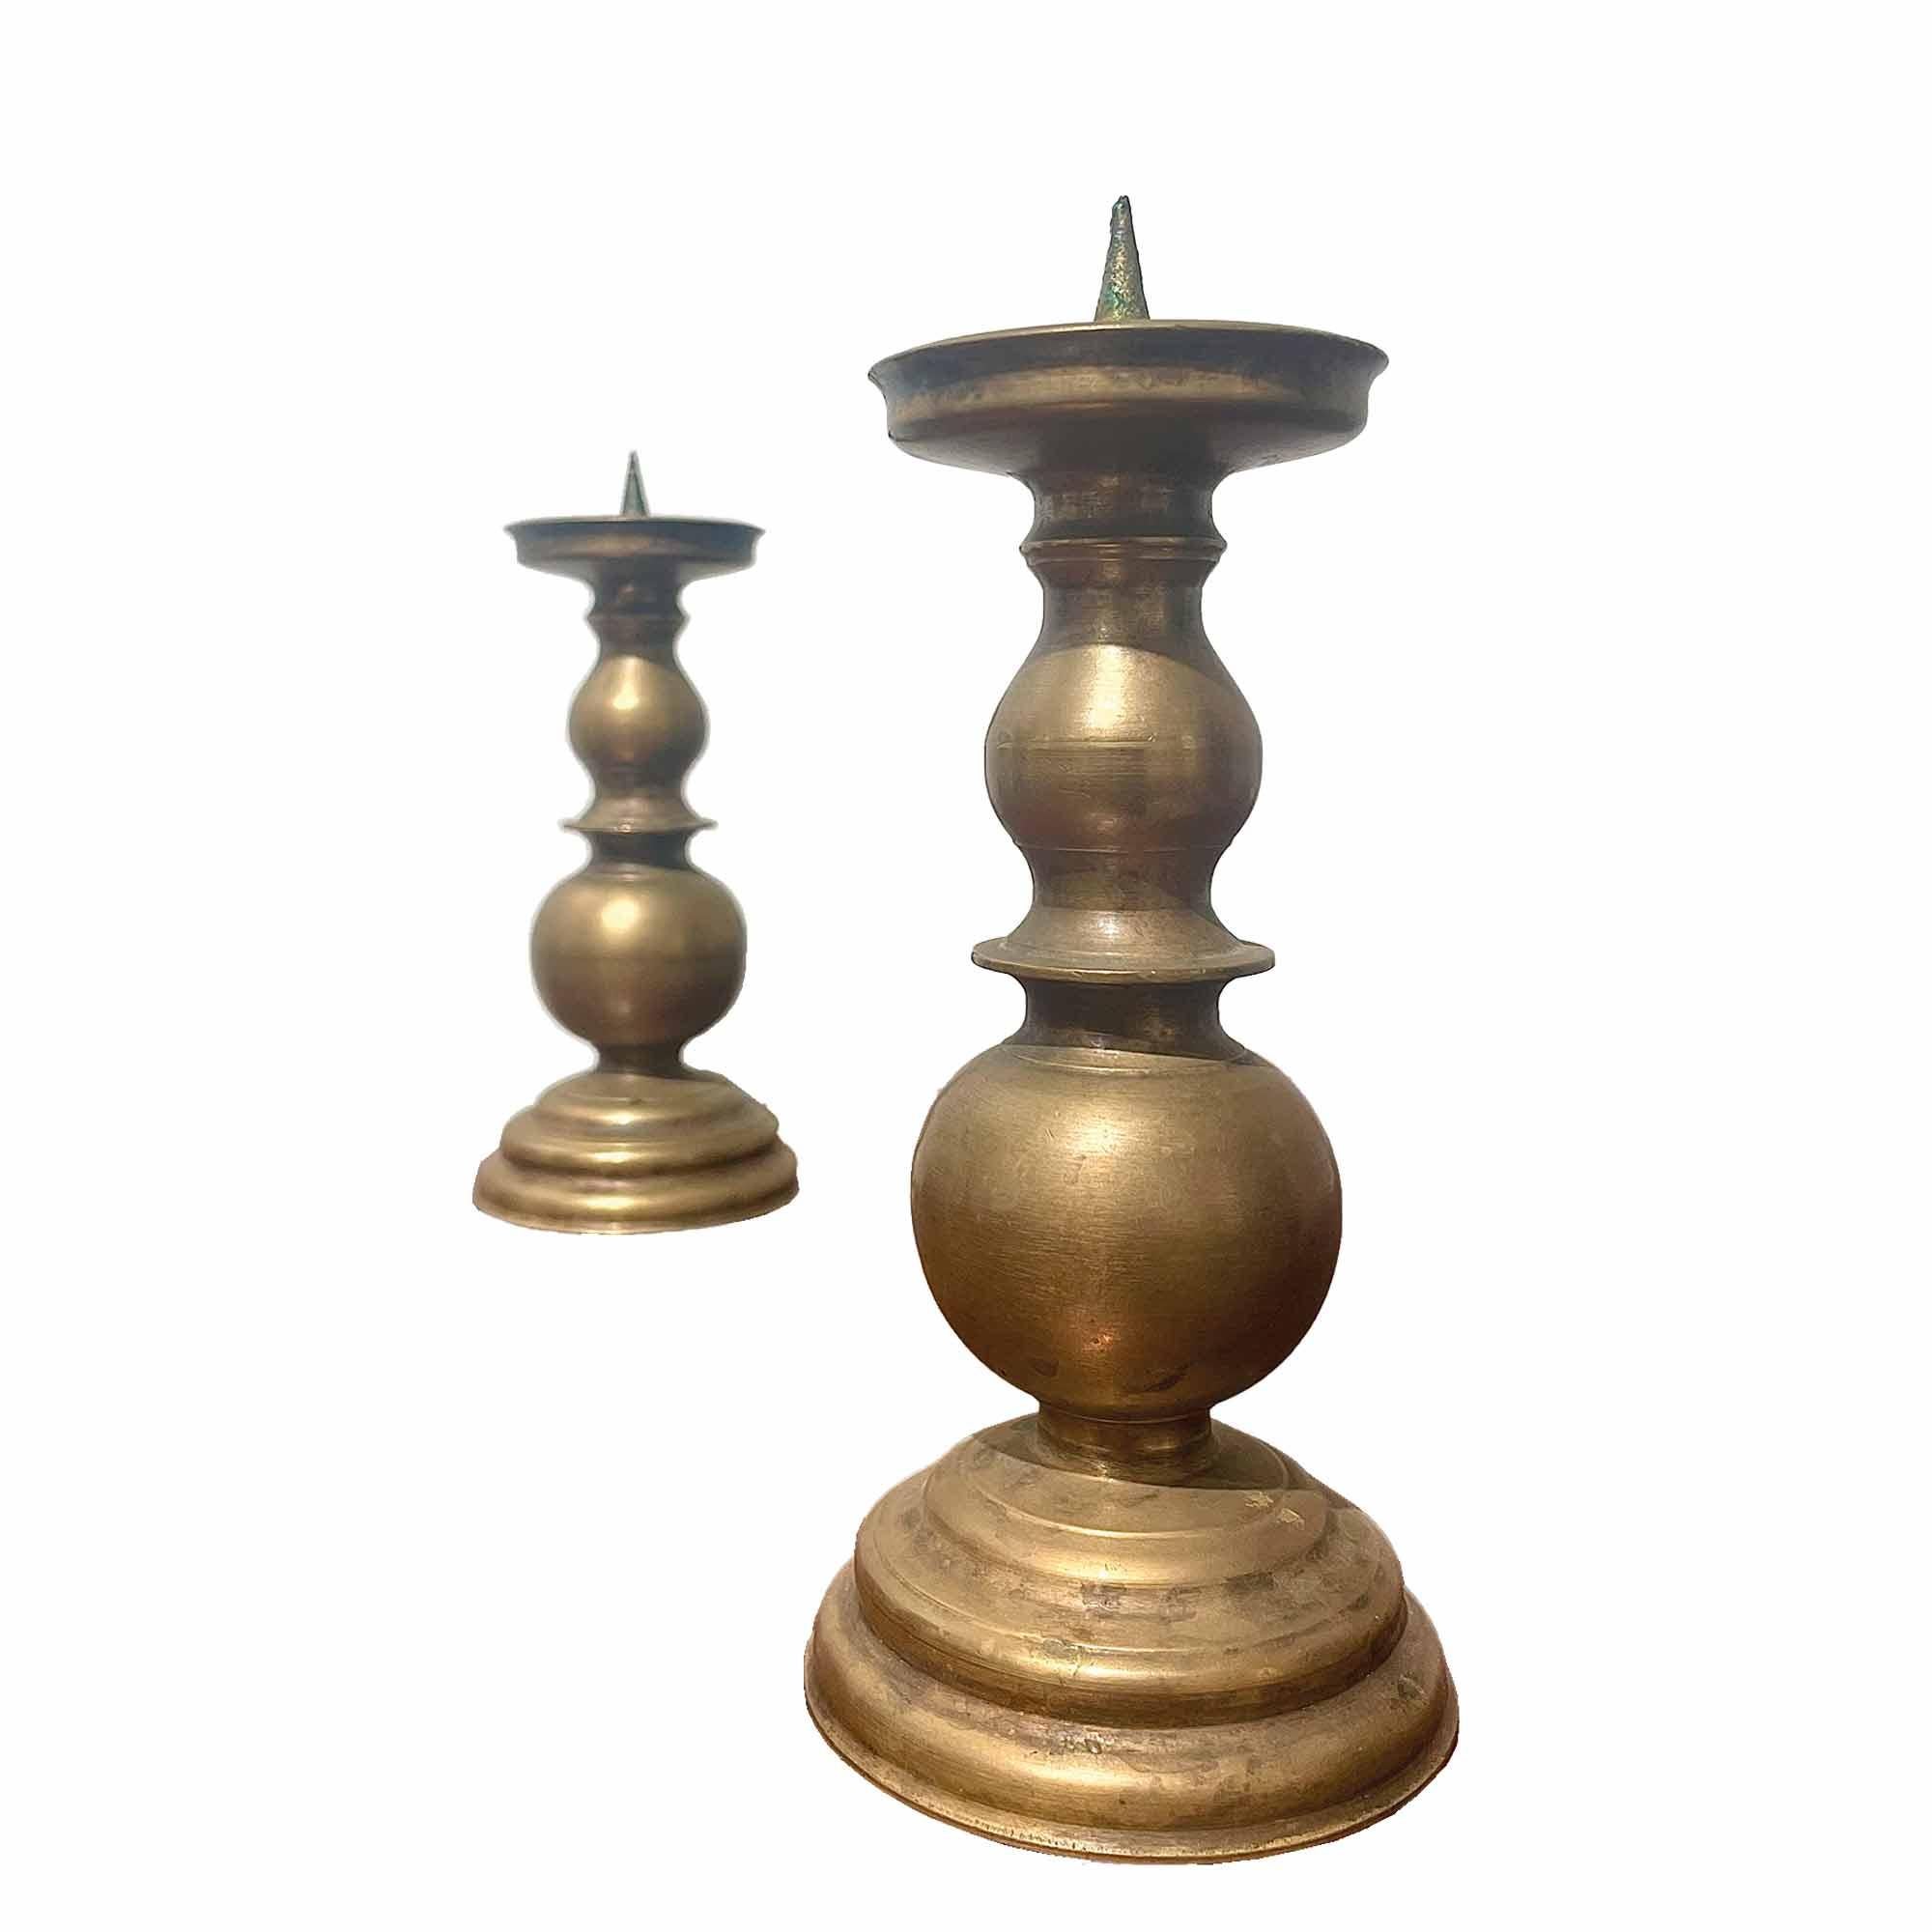 Paire de chandeliers vintage en laiton, fin du 19ème siècle. Ils se distinguent par leurs lignes sculpturales affirmées et raffinées. Leur forme élégante ajoute beaucoup de charme vintage et de simplicité. Les bougeoirs peuvent constituer un élément